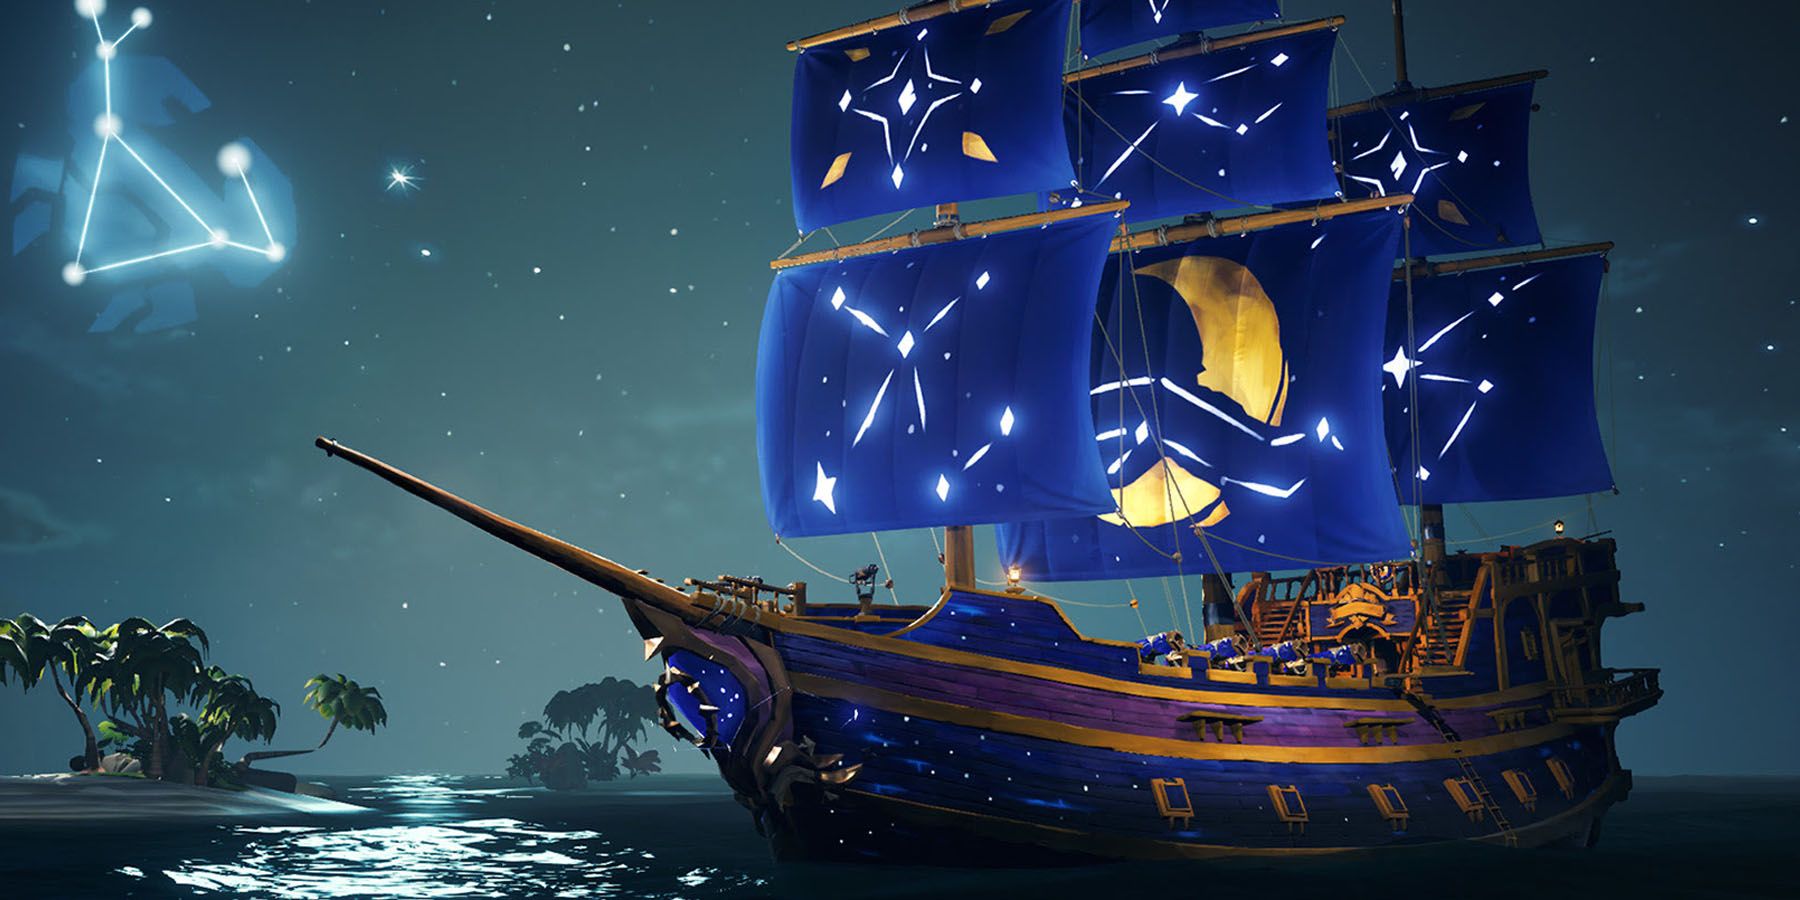 Sea of Thieves verkauft jetzt ein wunderschönes Glowing LodestarSchiff